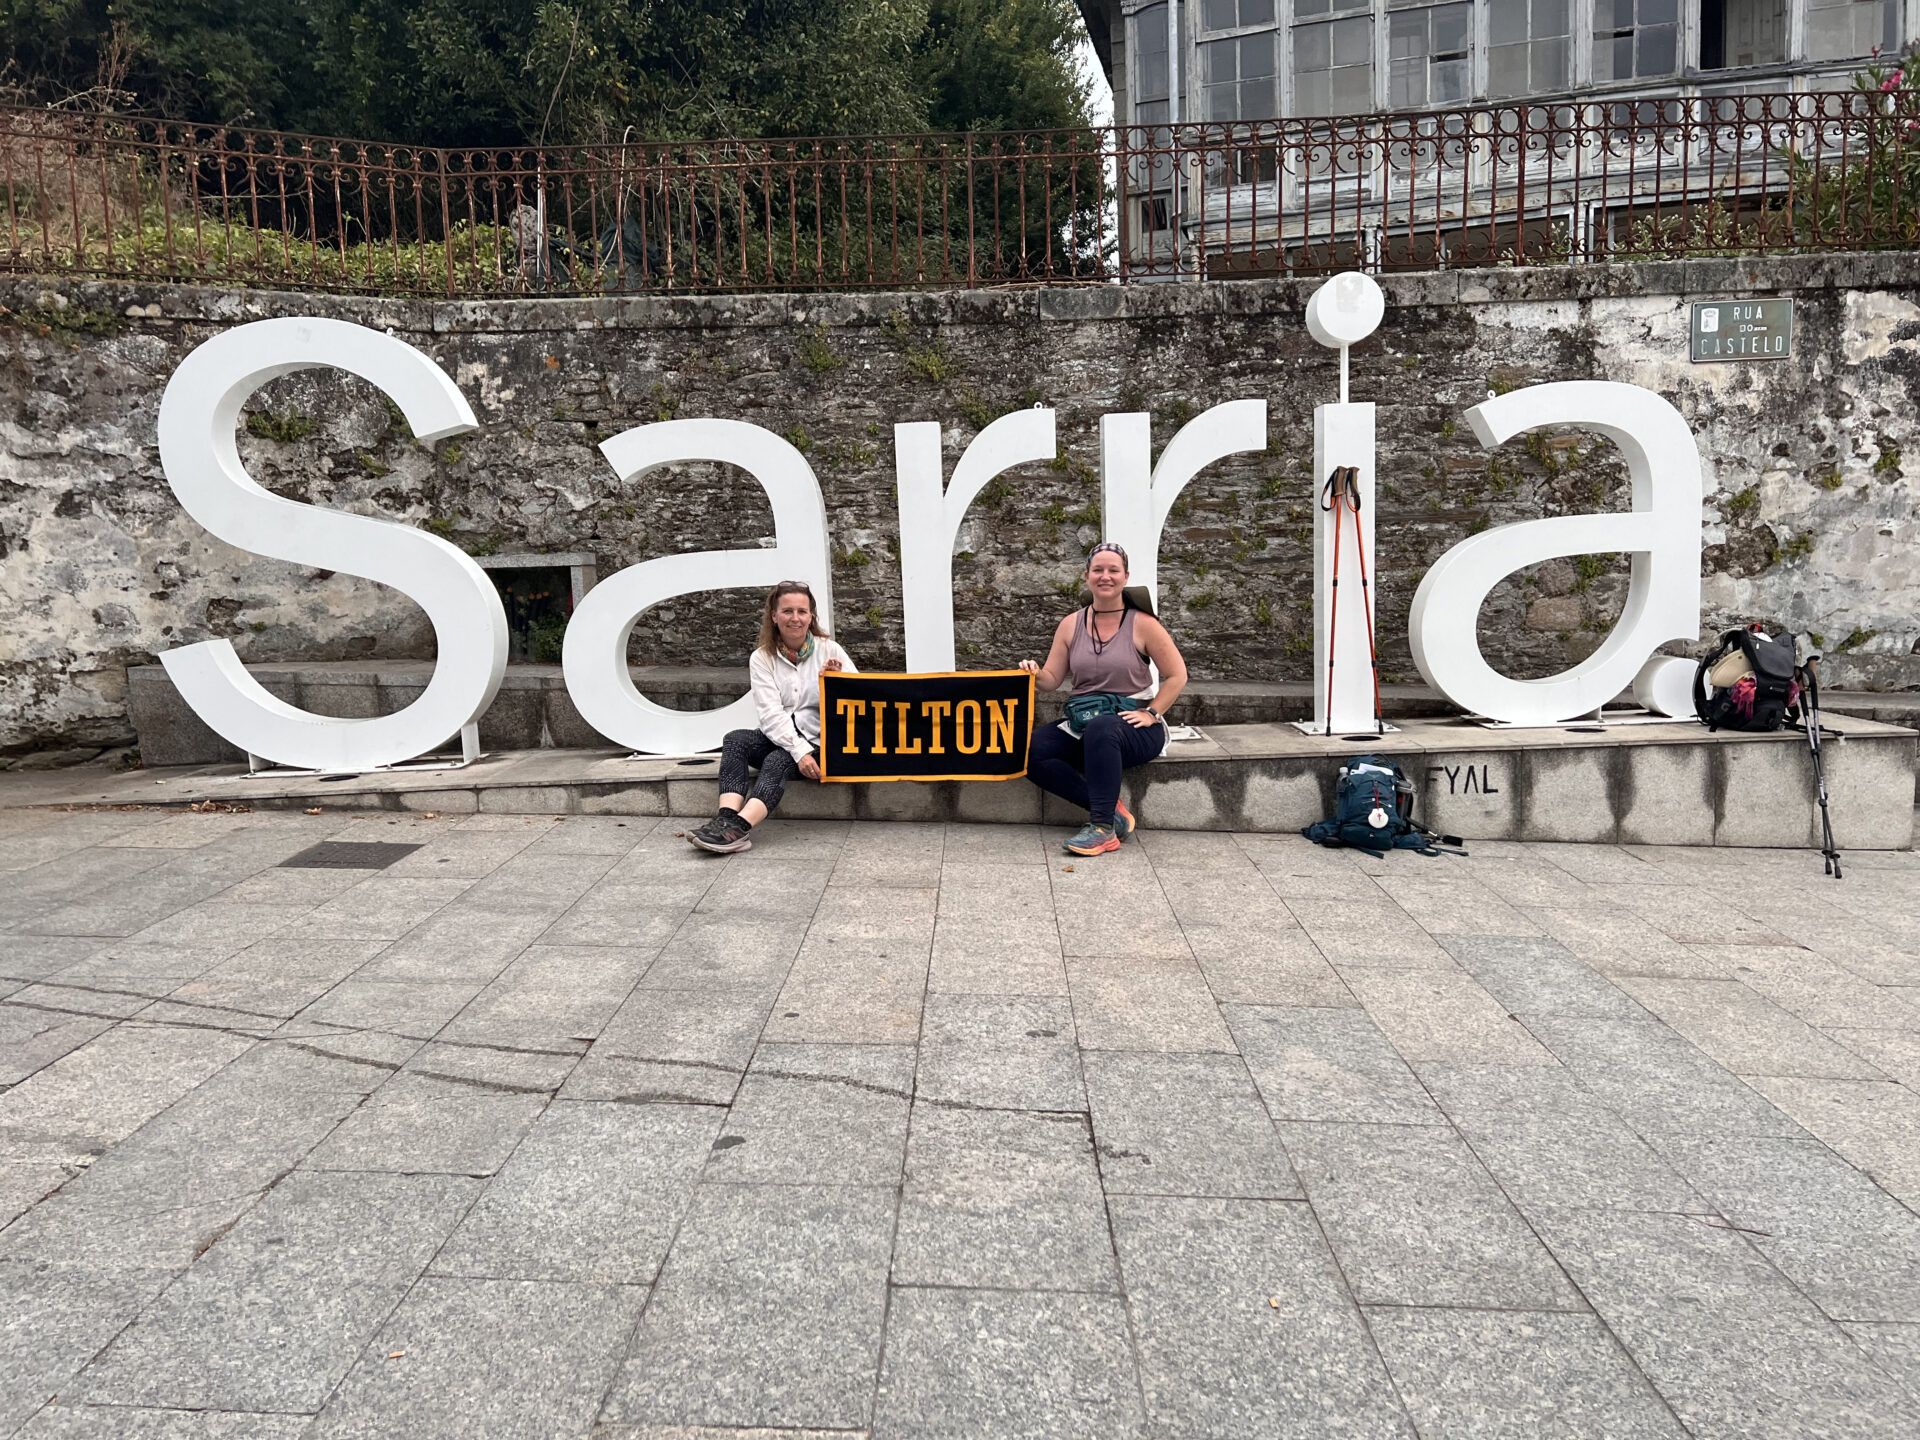 Sarria - less than 70 miles to go